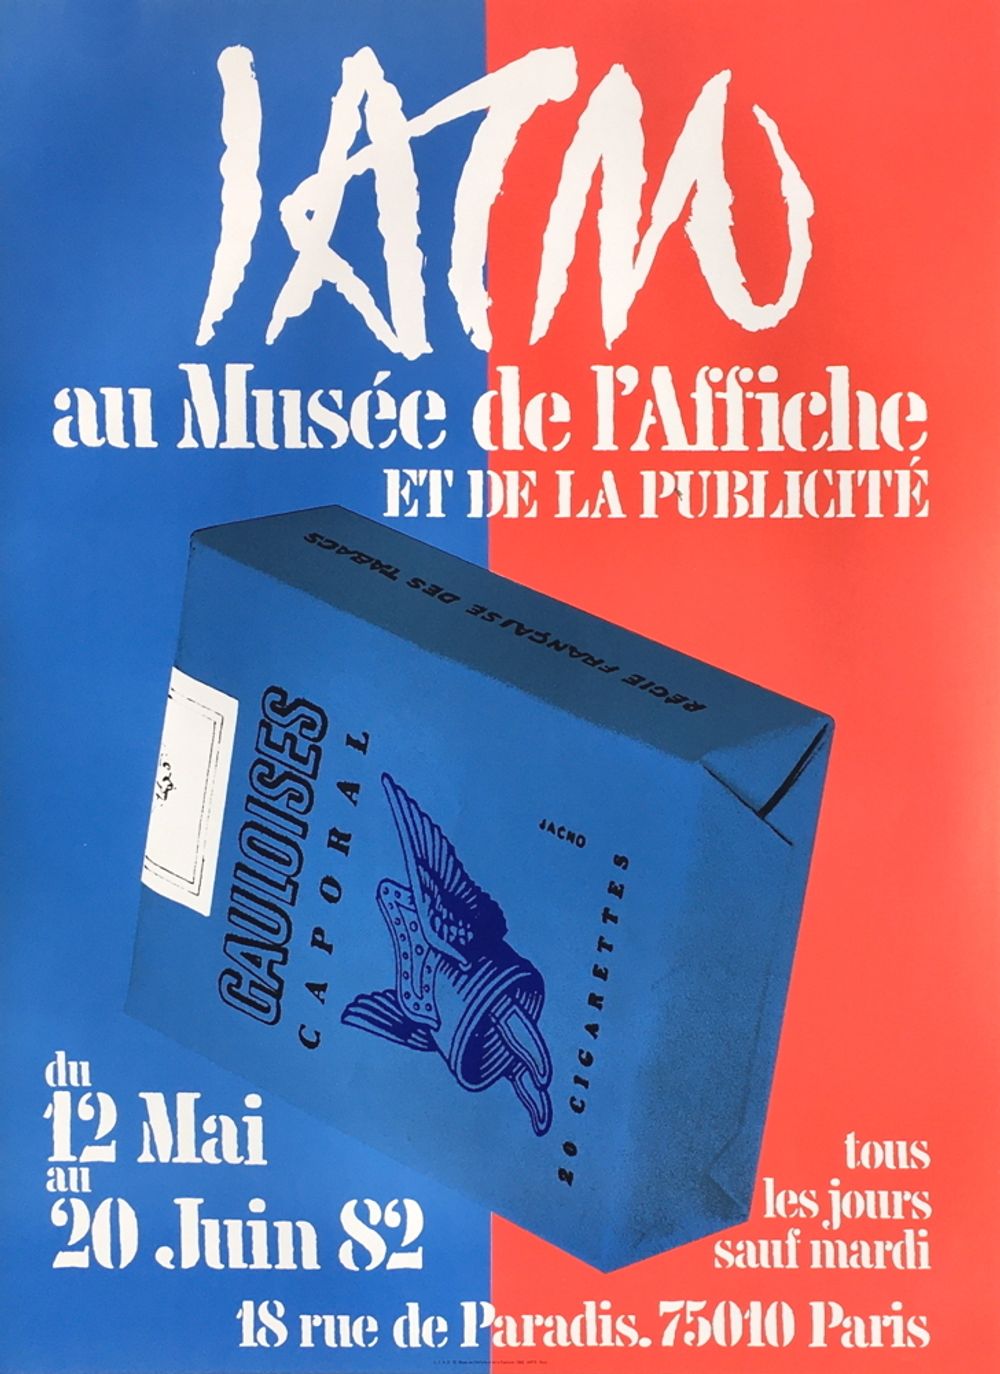 Expo 82 - Musée de l'Affiche et de la Publicité